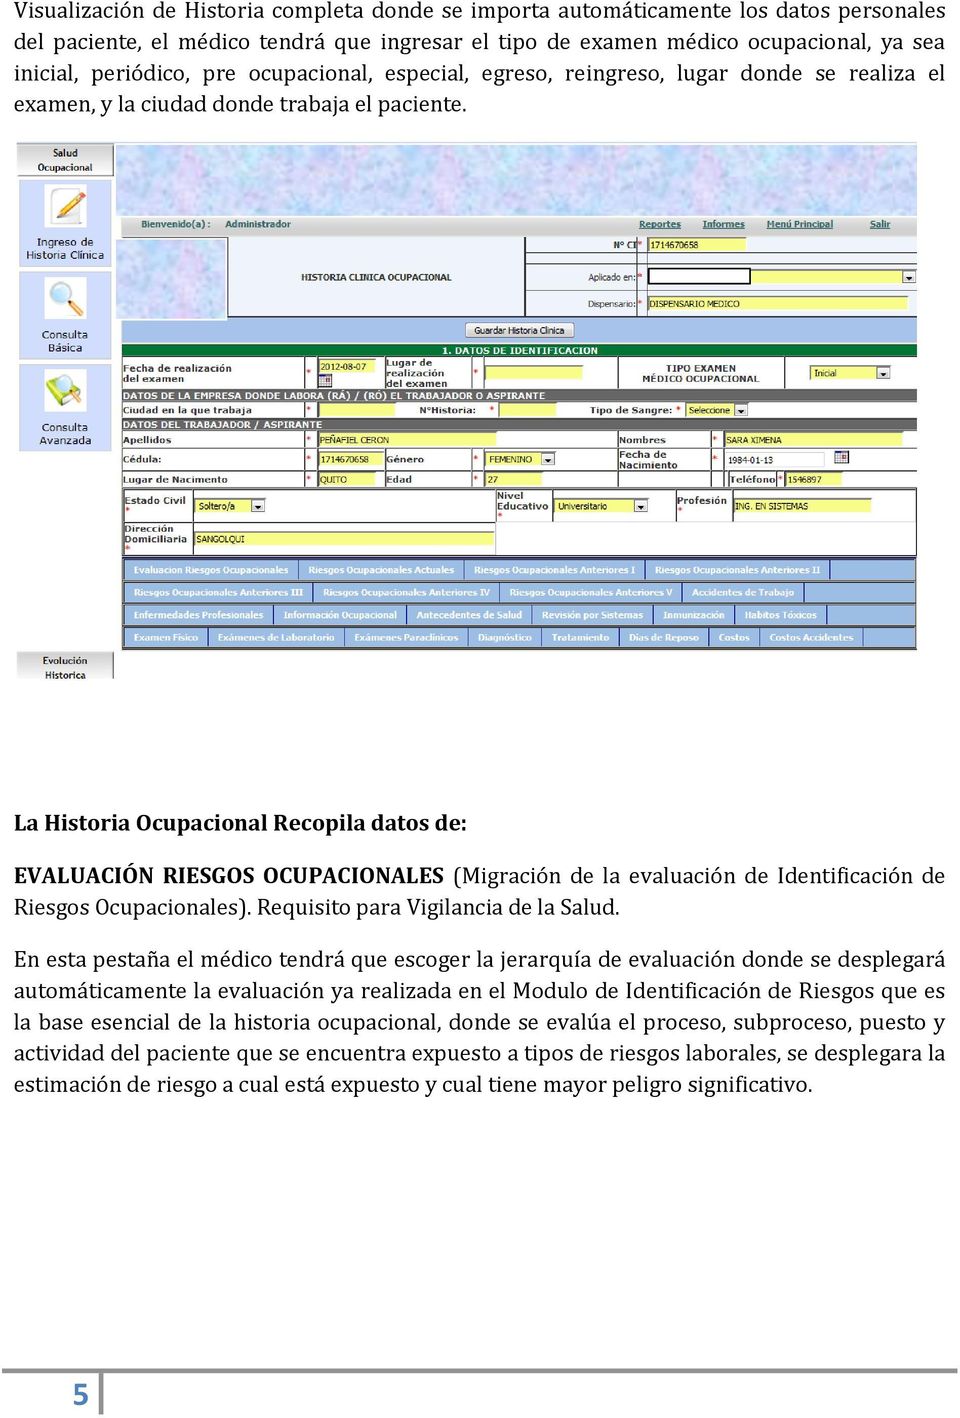 La Historia Ocupacional Recopila datos de: EVALUACIÓN RIESGOS OCUPACIONALES (Migración de la evaluación de Identificación de Riesgos Ocupacionales). Requisito para Vigilancia de la Salud.